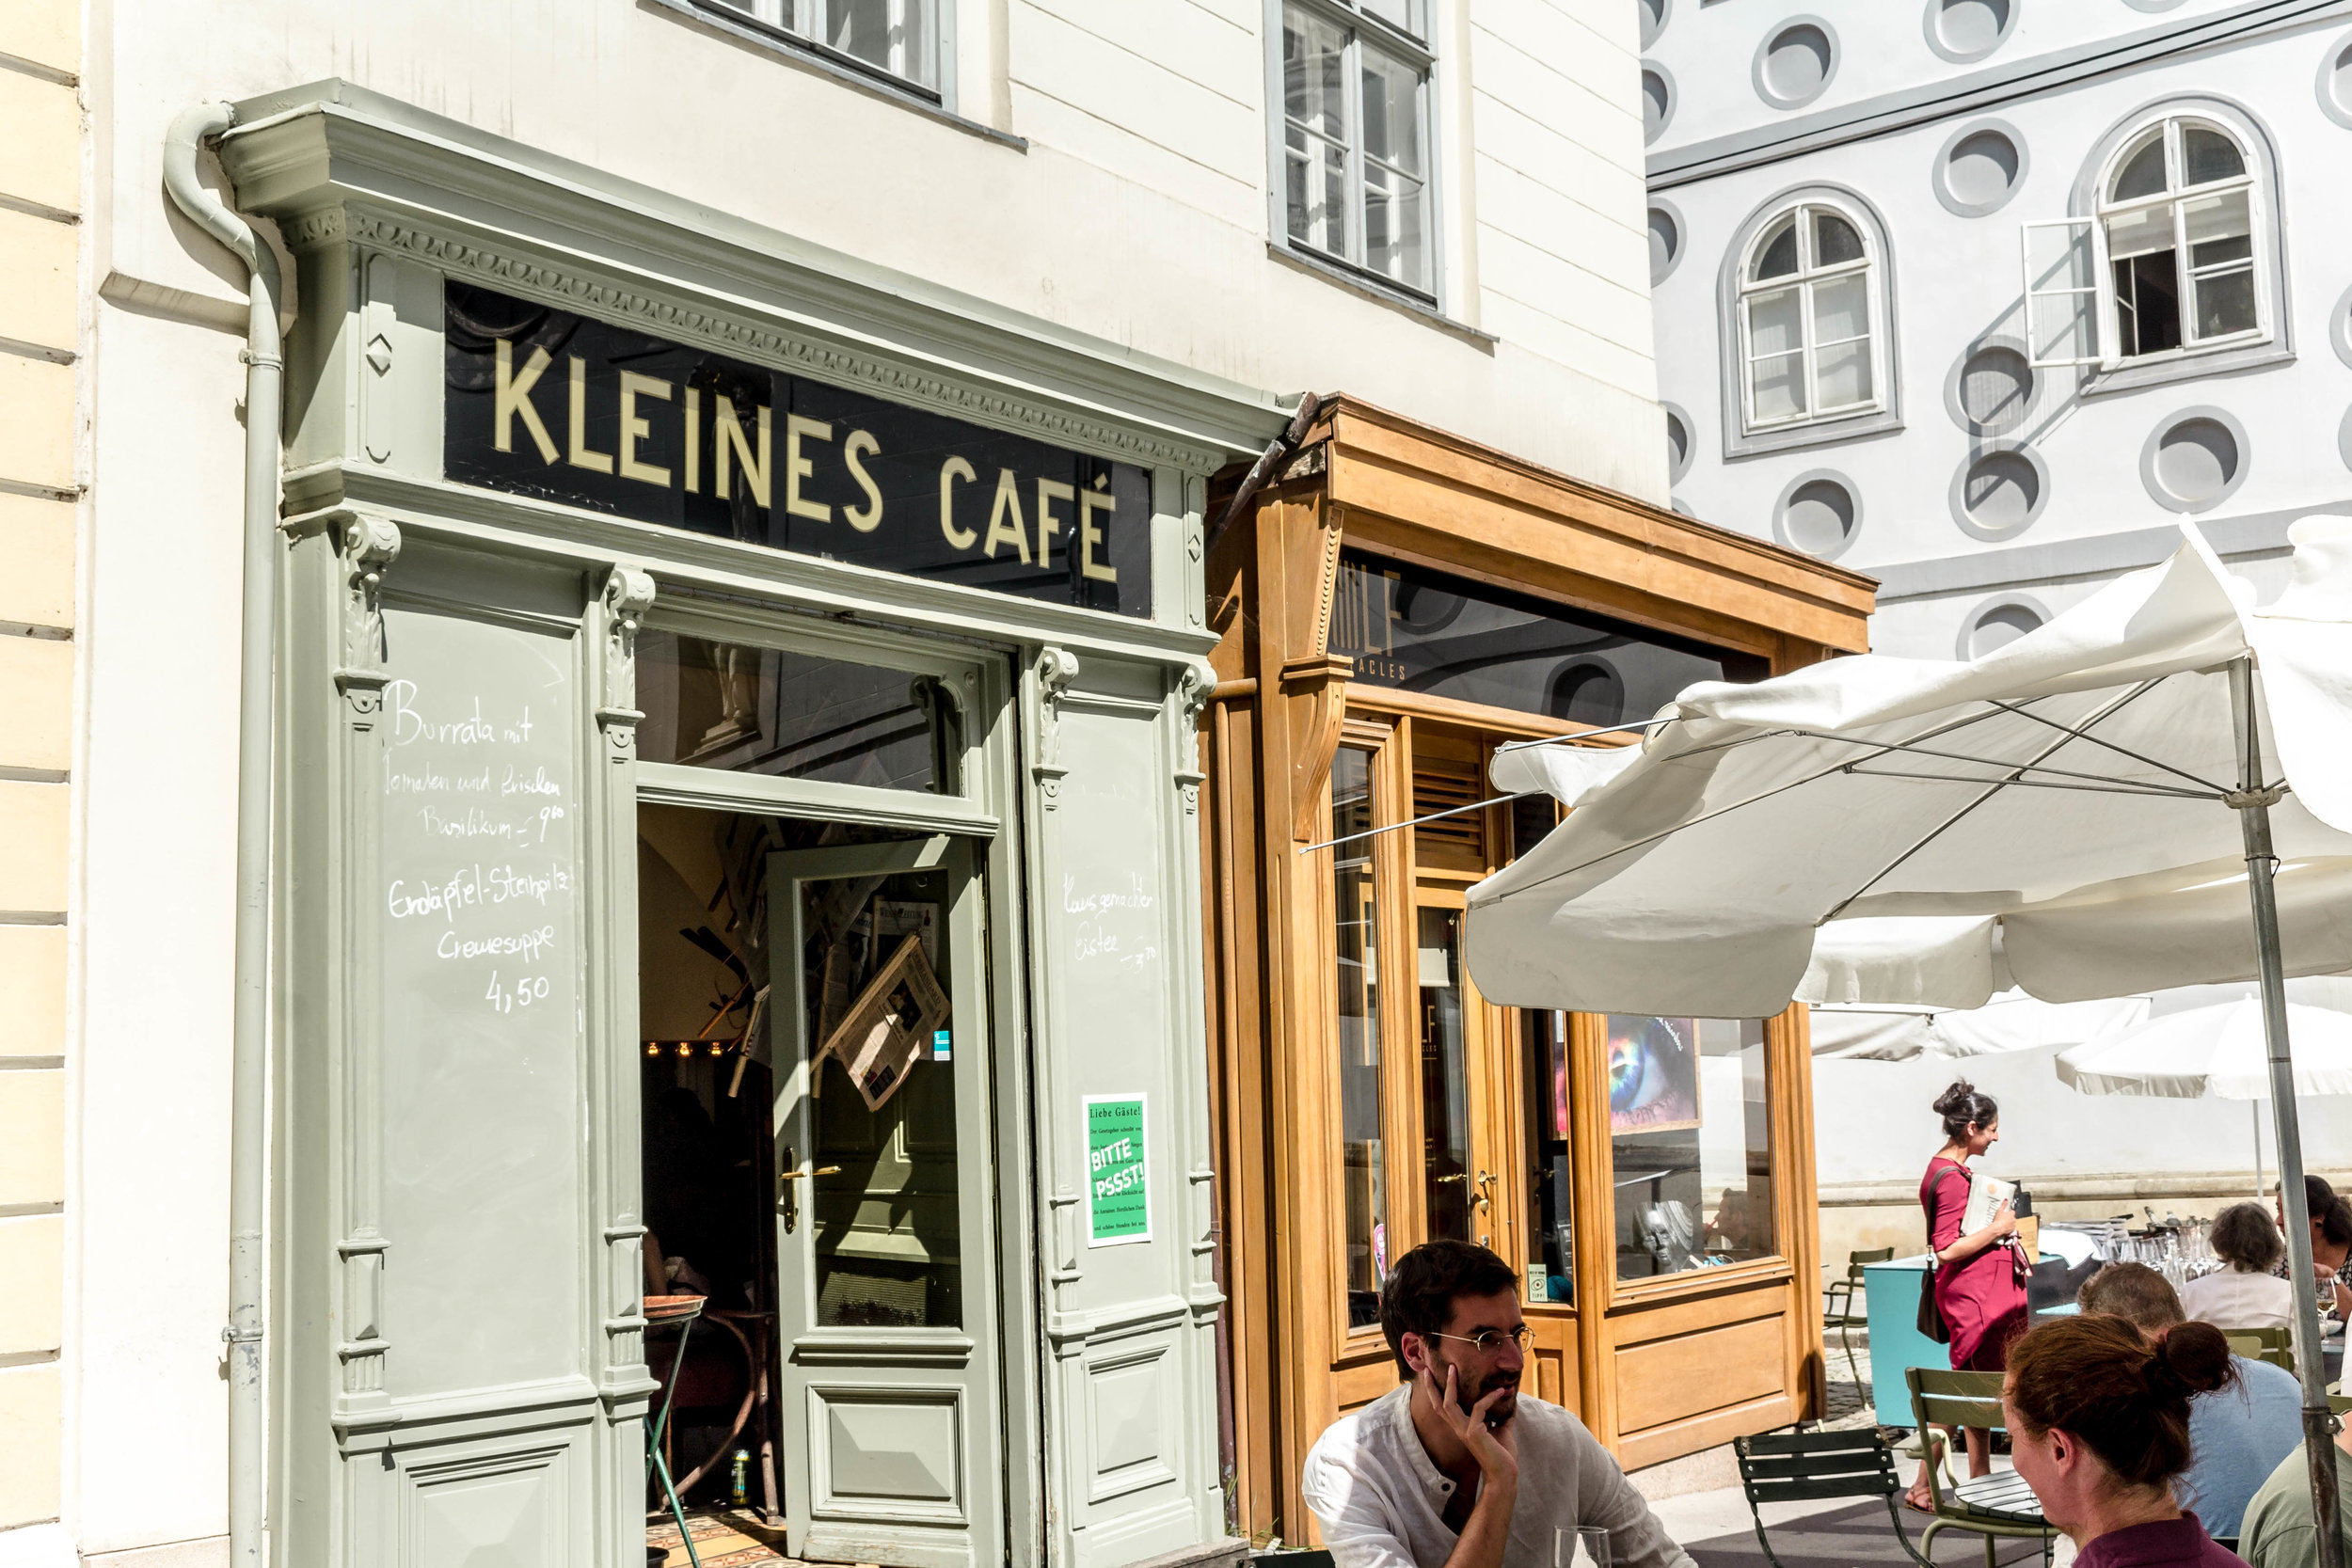 Kleines Cafe Vienna, Austria